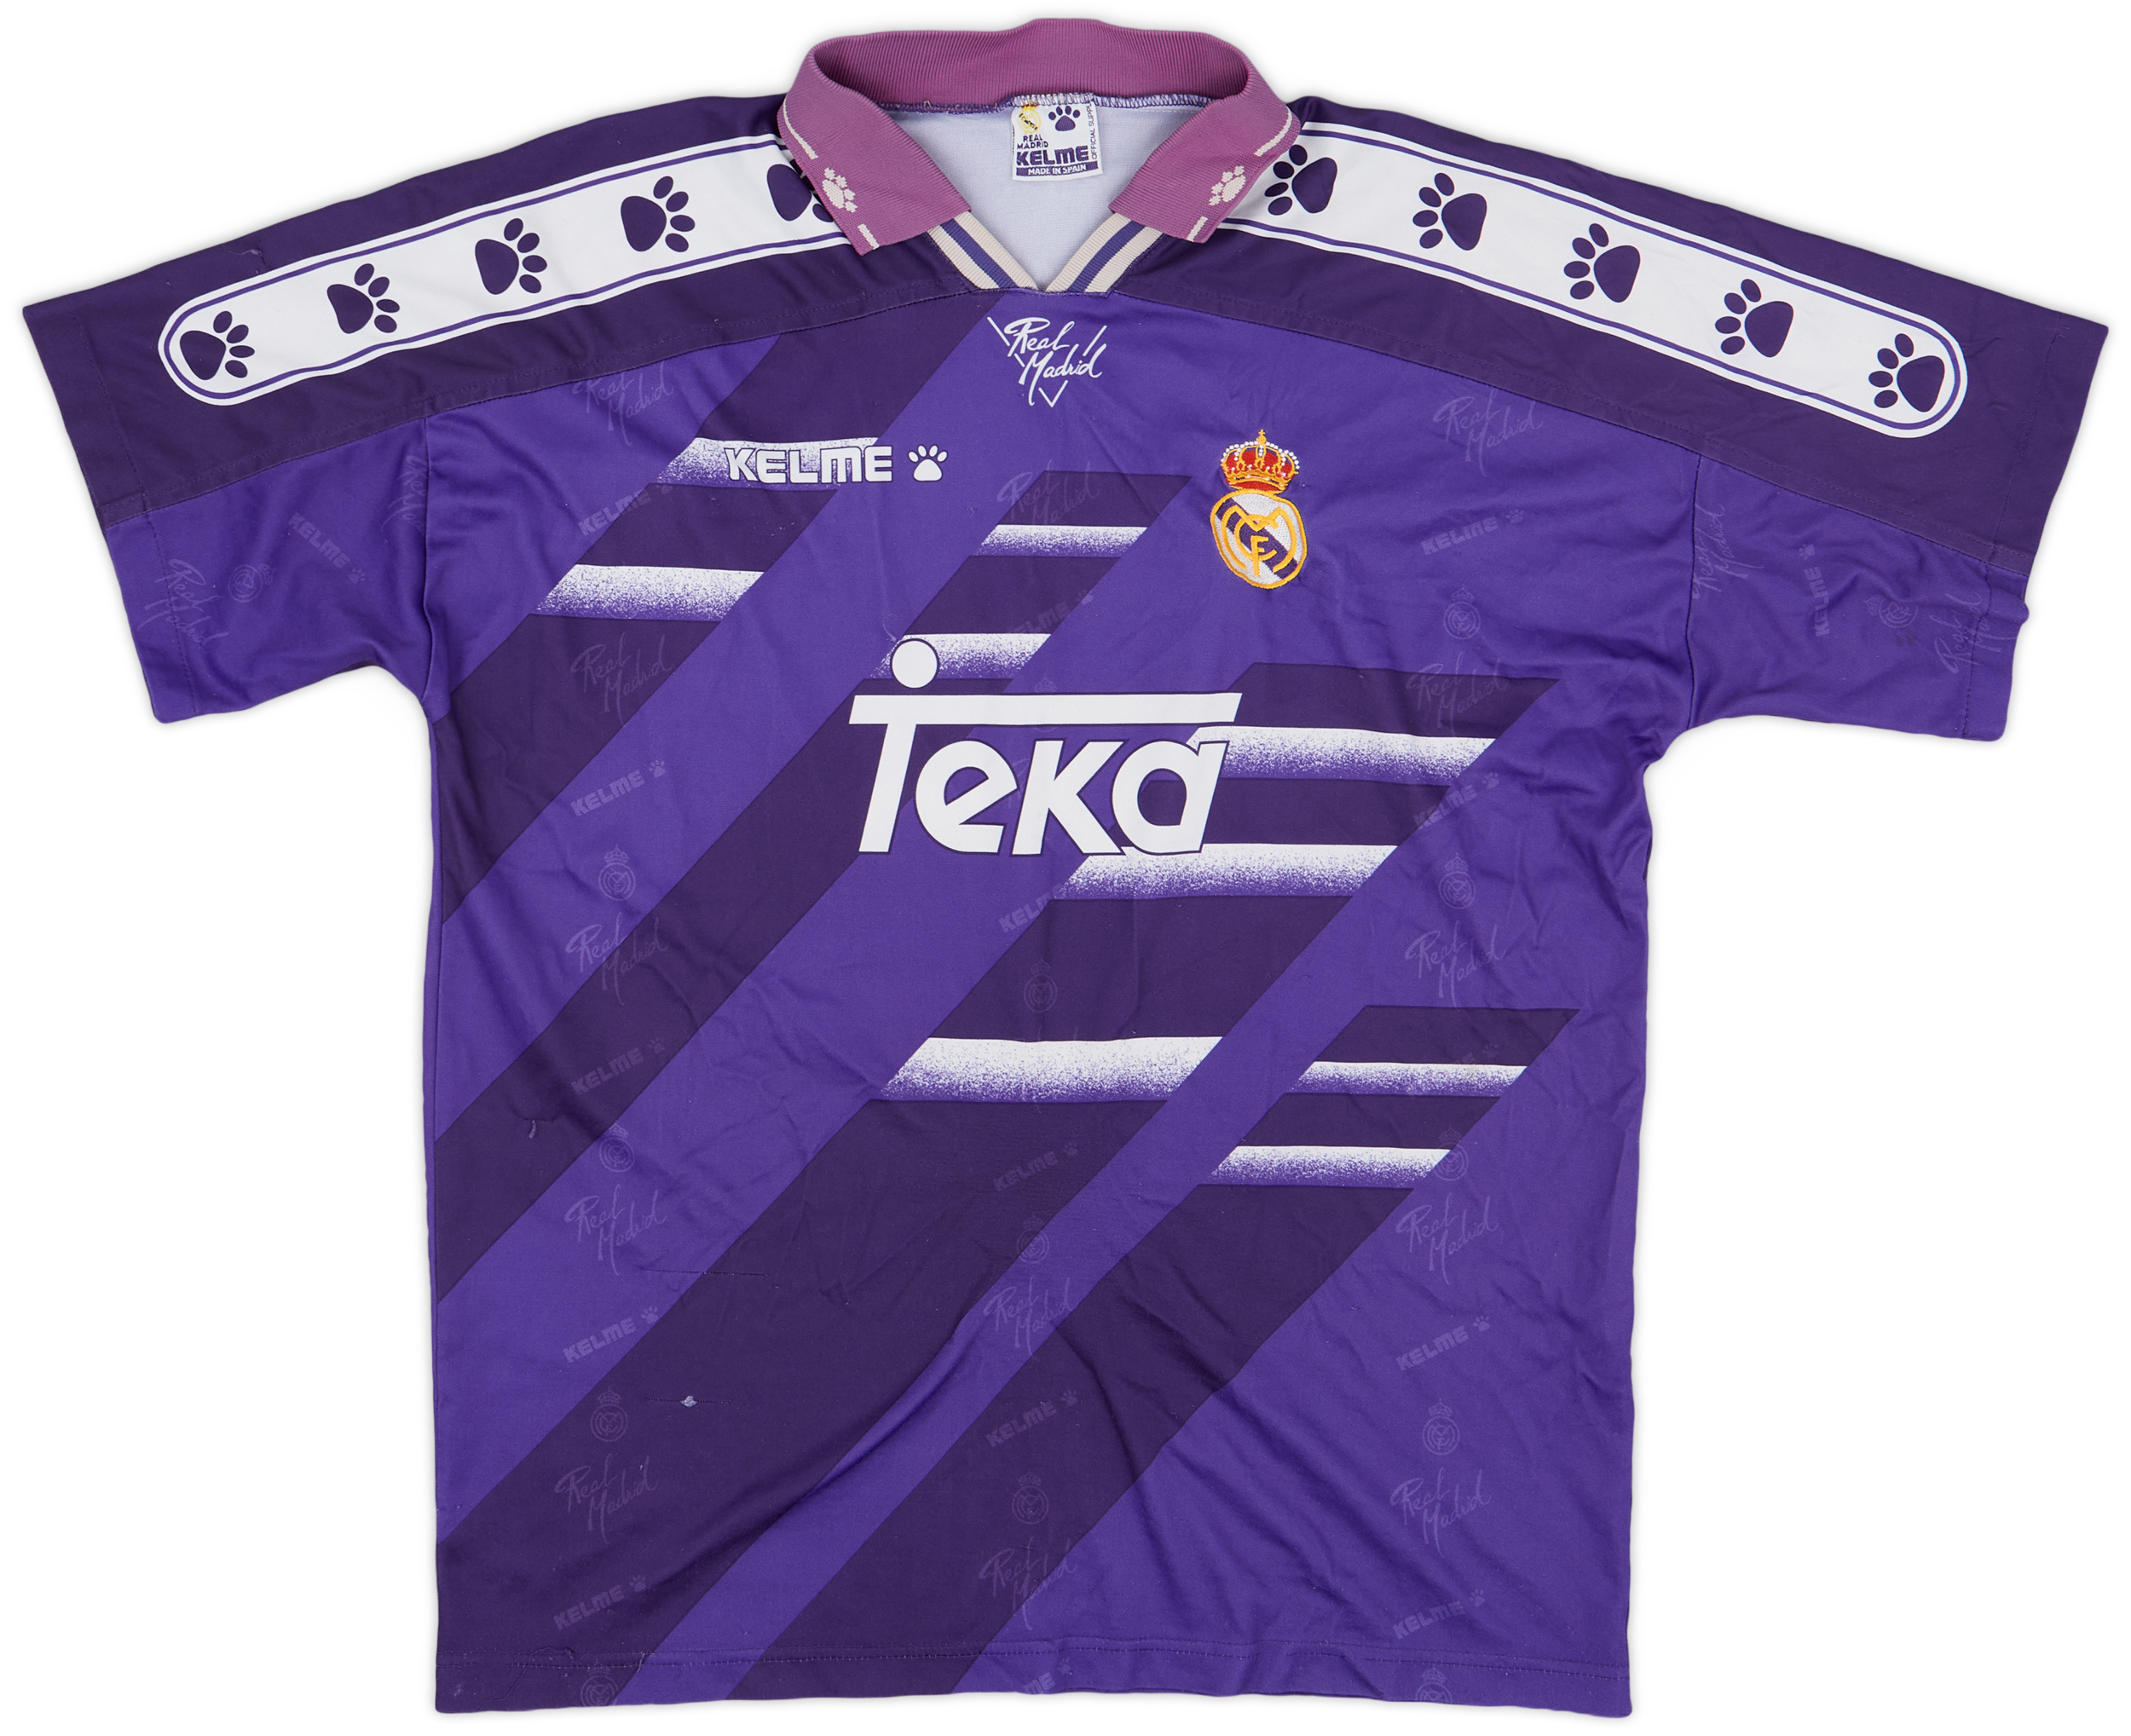 Real Madrid  Fora camisa (Original)